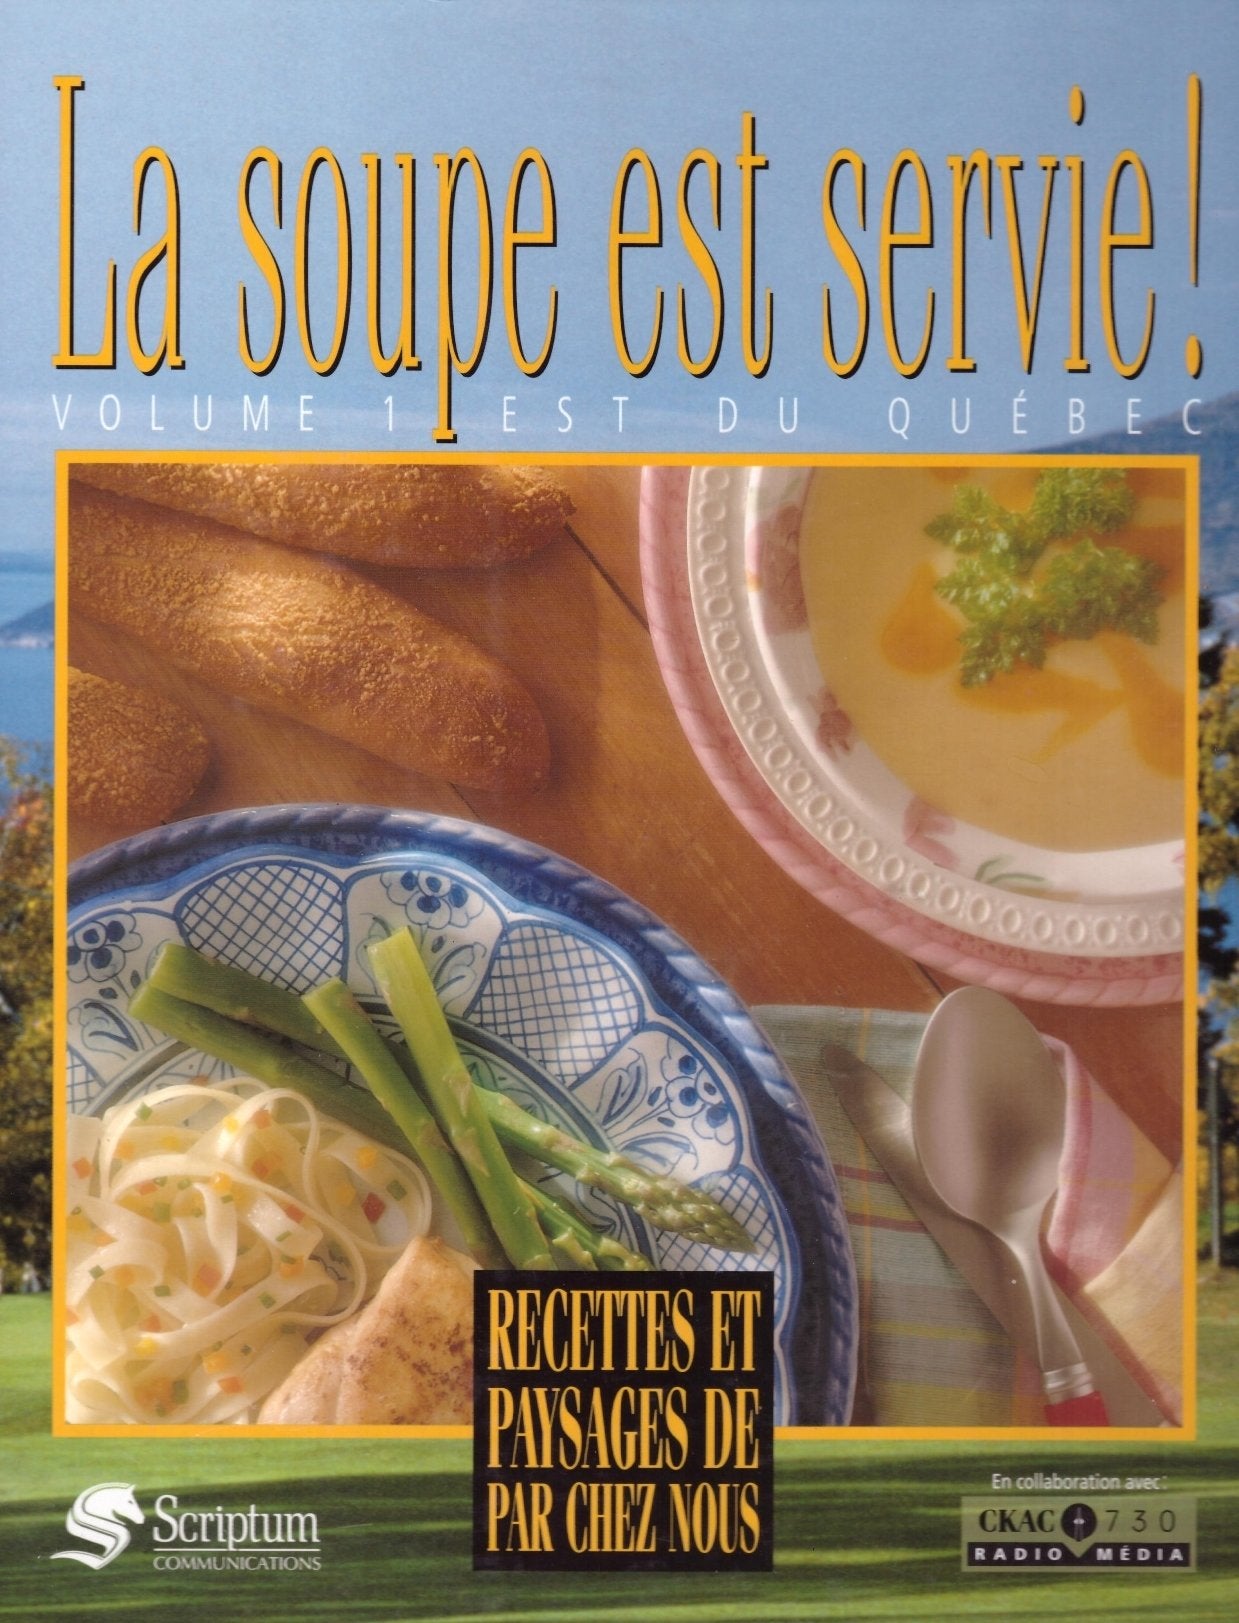 La Soupe Est Servie! # Vol. 1 : Est du Québec : Recettes et paysages de par chez nous - Laurent Saget